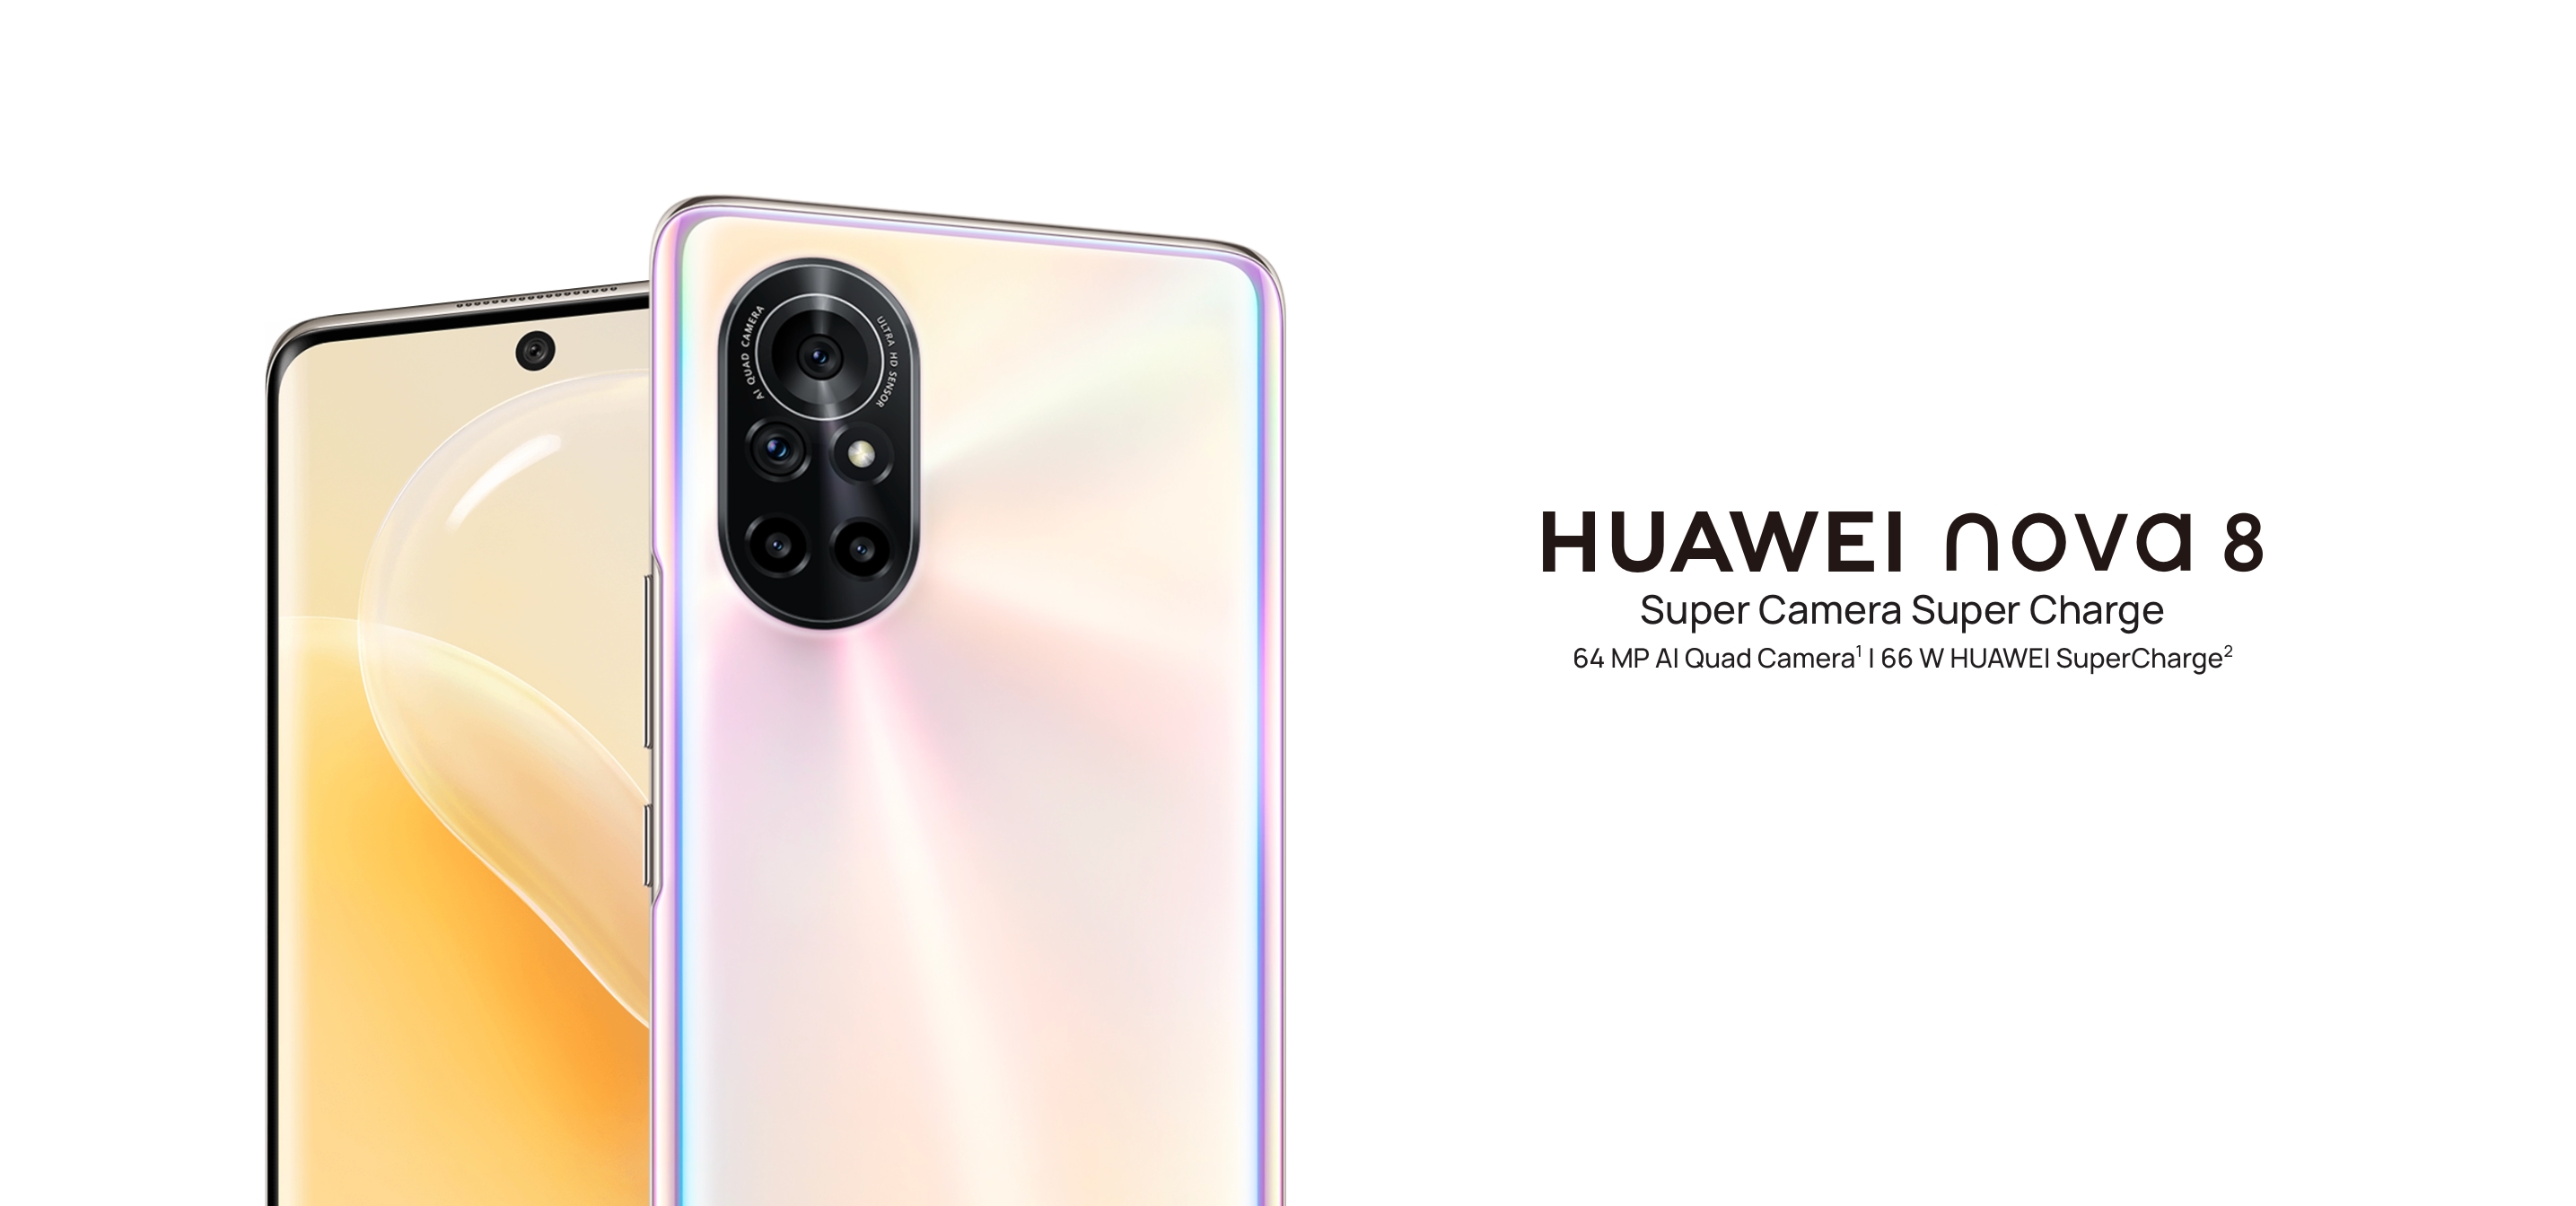 Das Huawei Nova 8 ist das erste Smartphone des Unternehmens, das die EMUI 12-Oberfläche erhält